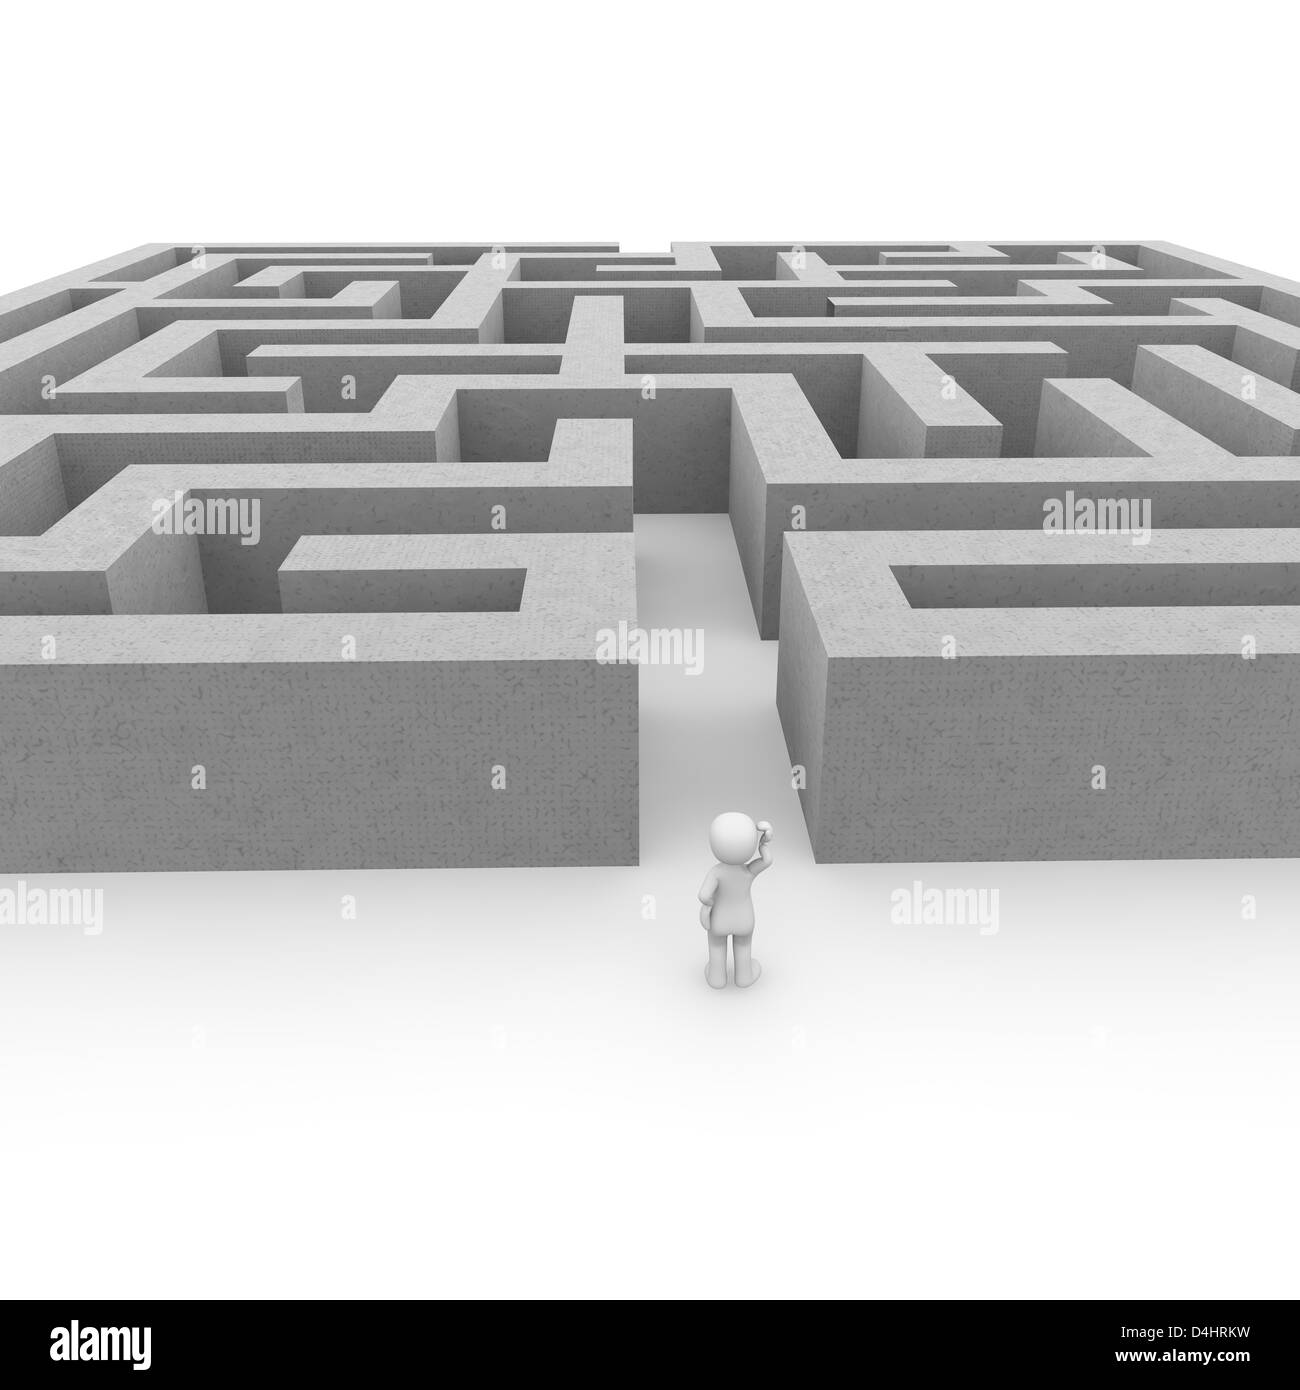 Das Labyrinth ist eine große Herausforderung für die mutigen Menschen! Stockfoto